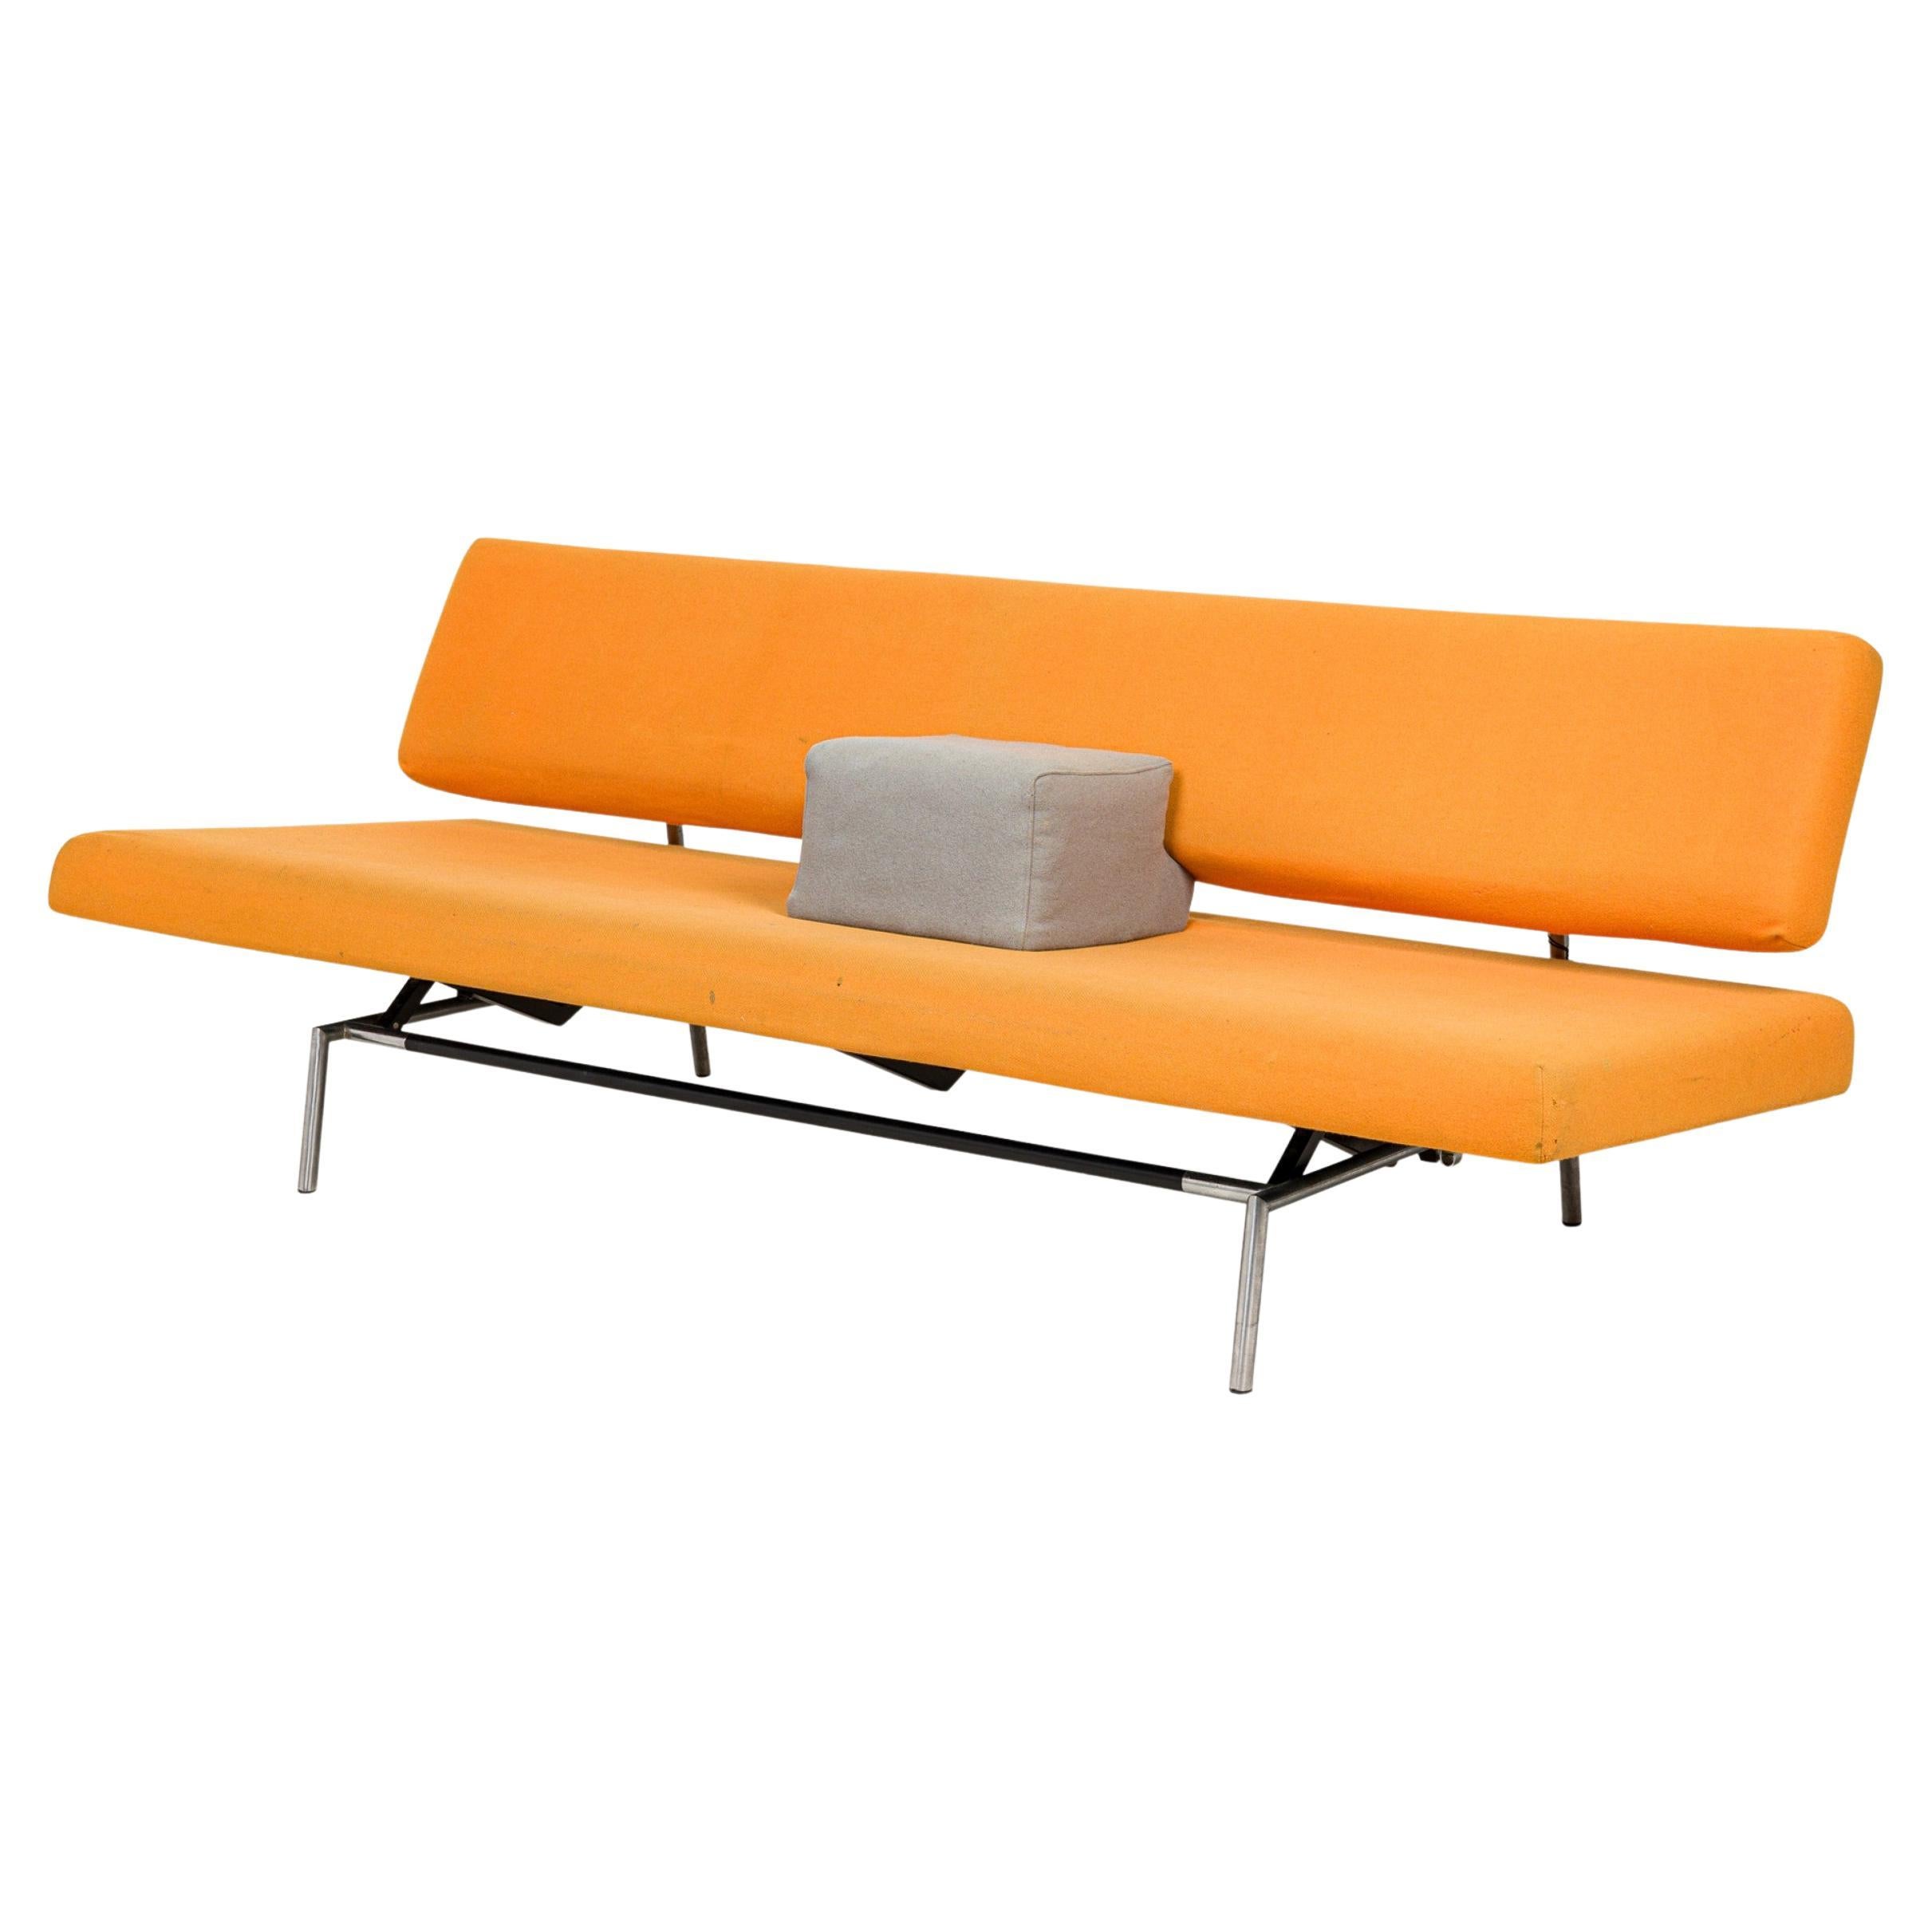 Martin Visser for Spectrum Orange Felt Convertible Sleeper Sofa (model BR02)